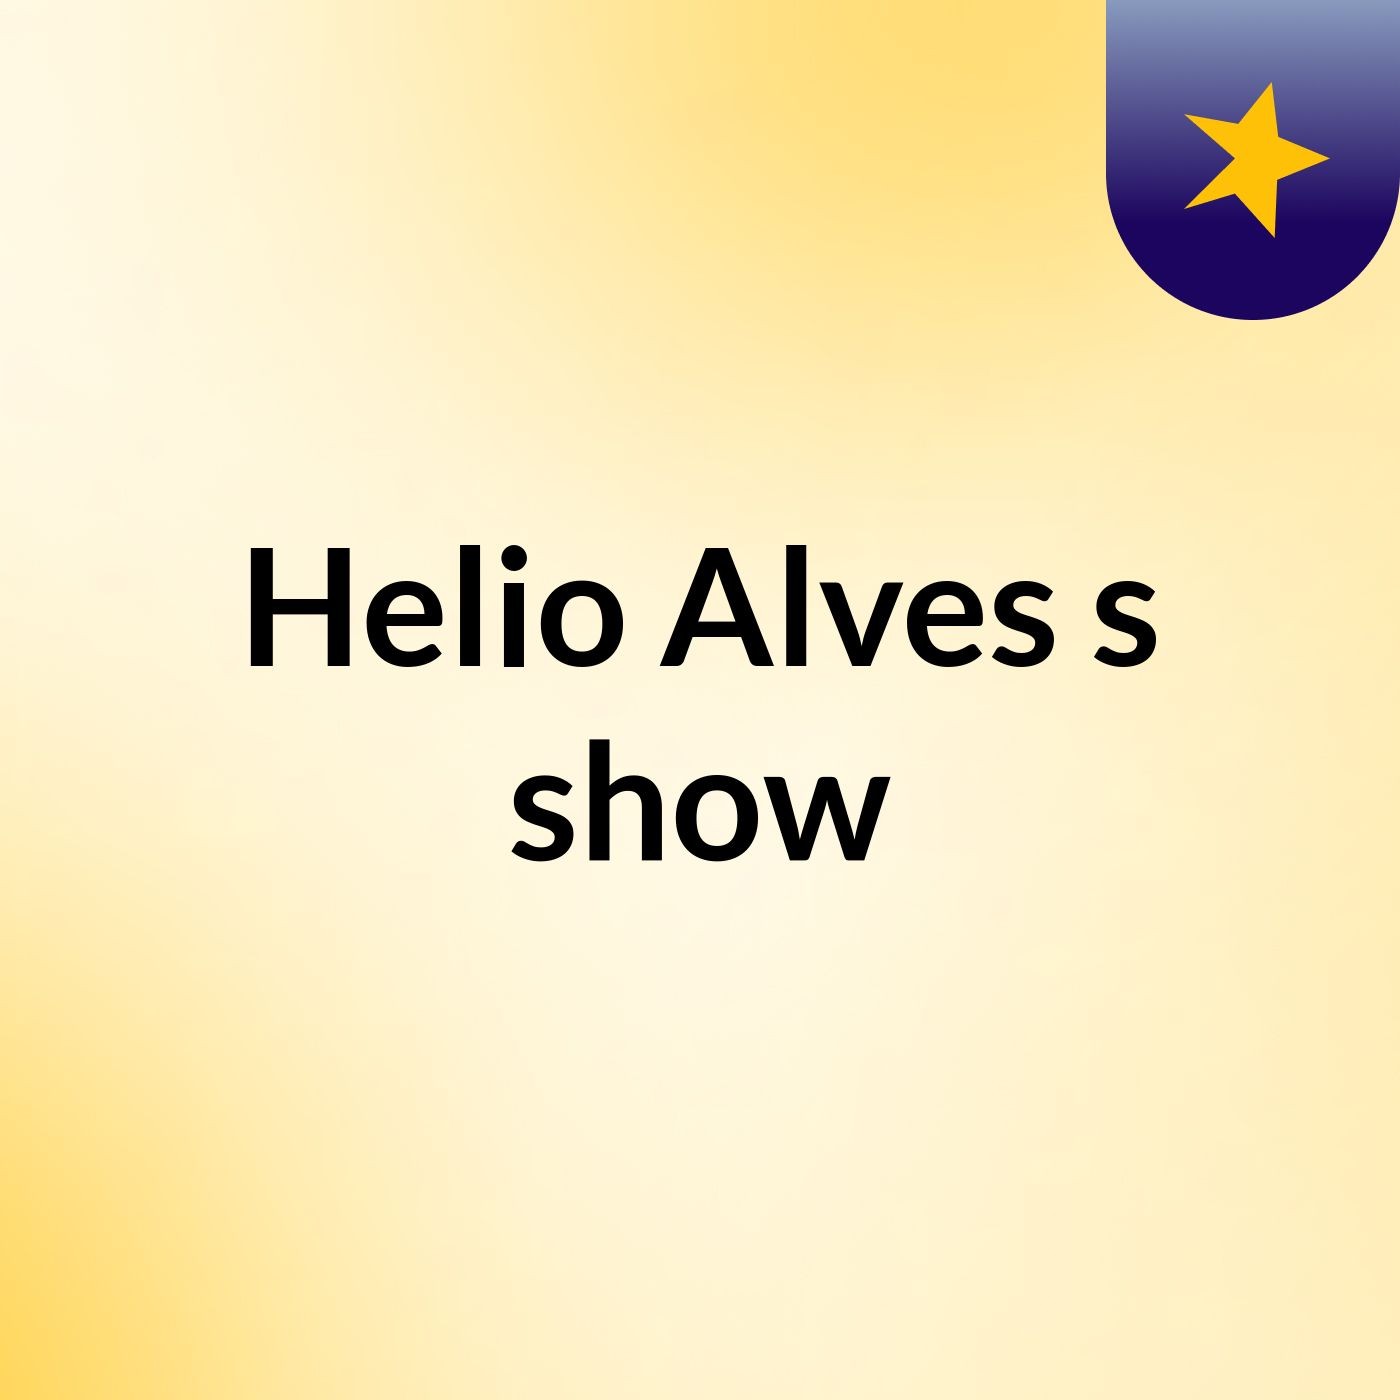 Helio Alves's show